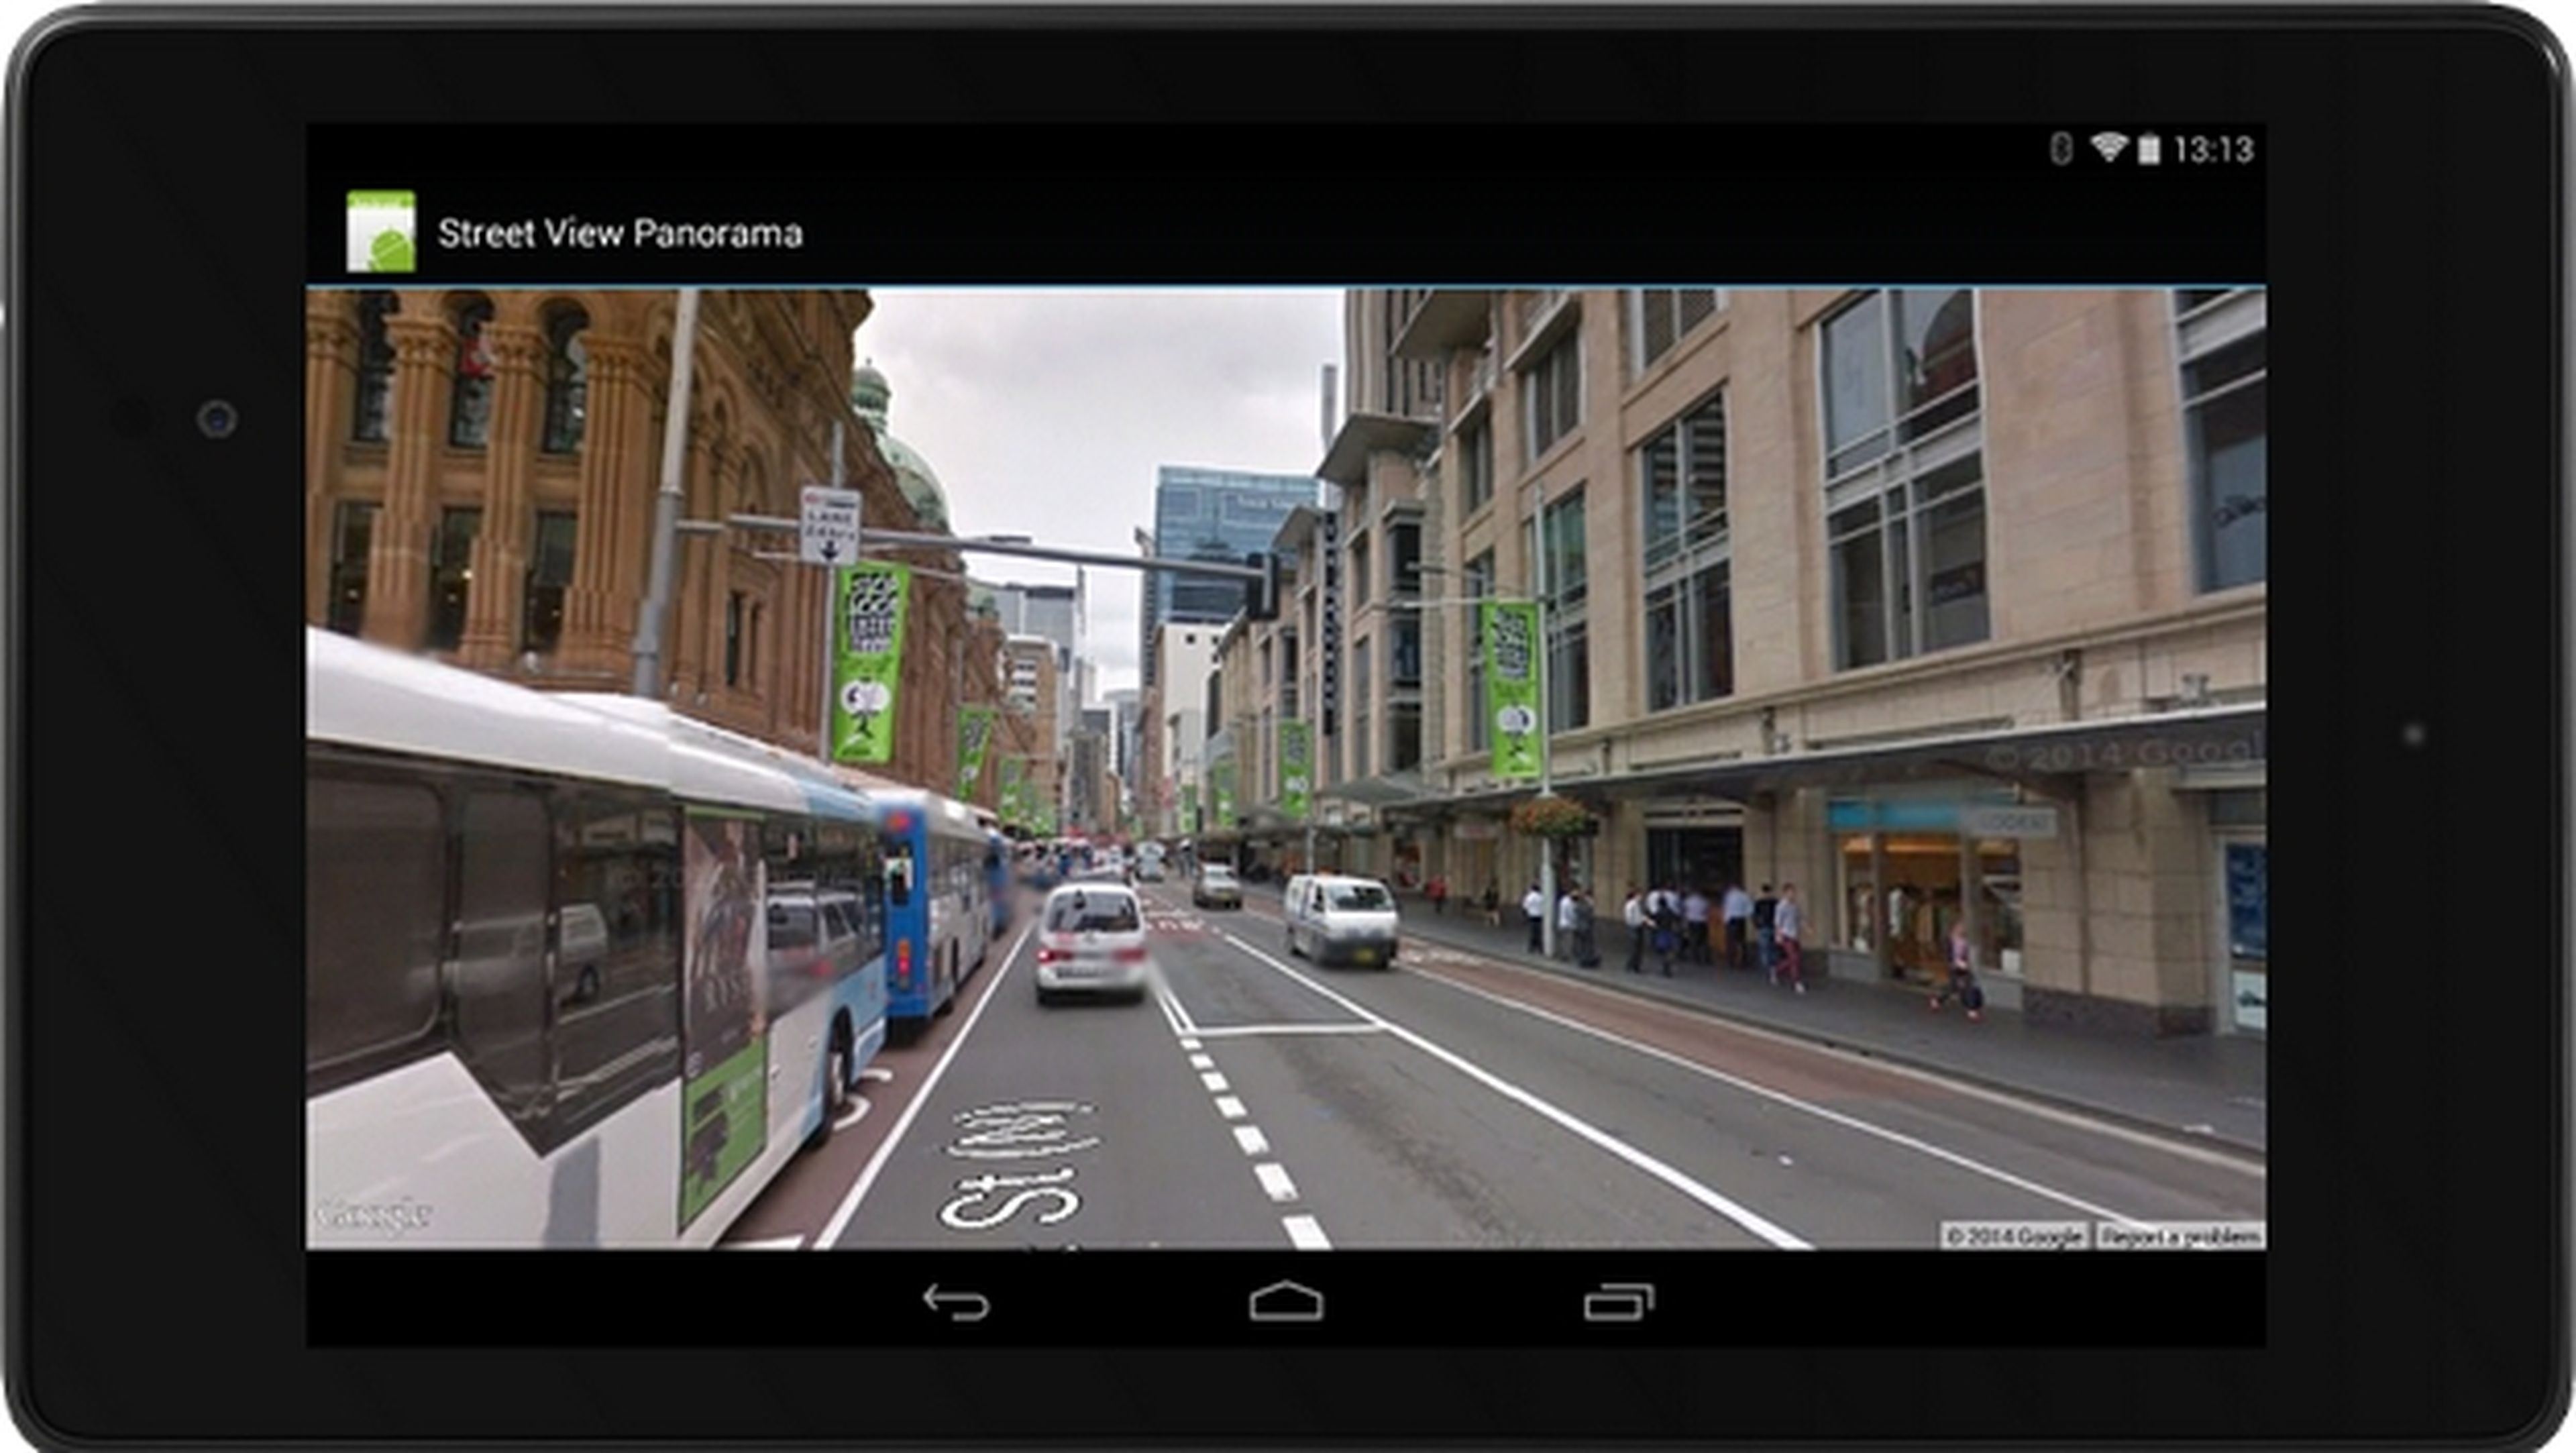 Novedades en las APIs de Google en el uso de Street View, Wallet, Location, y Google Maps, a través de Google Play Services 4.4